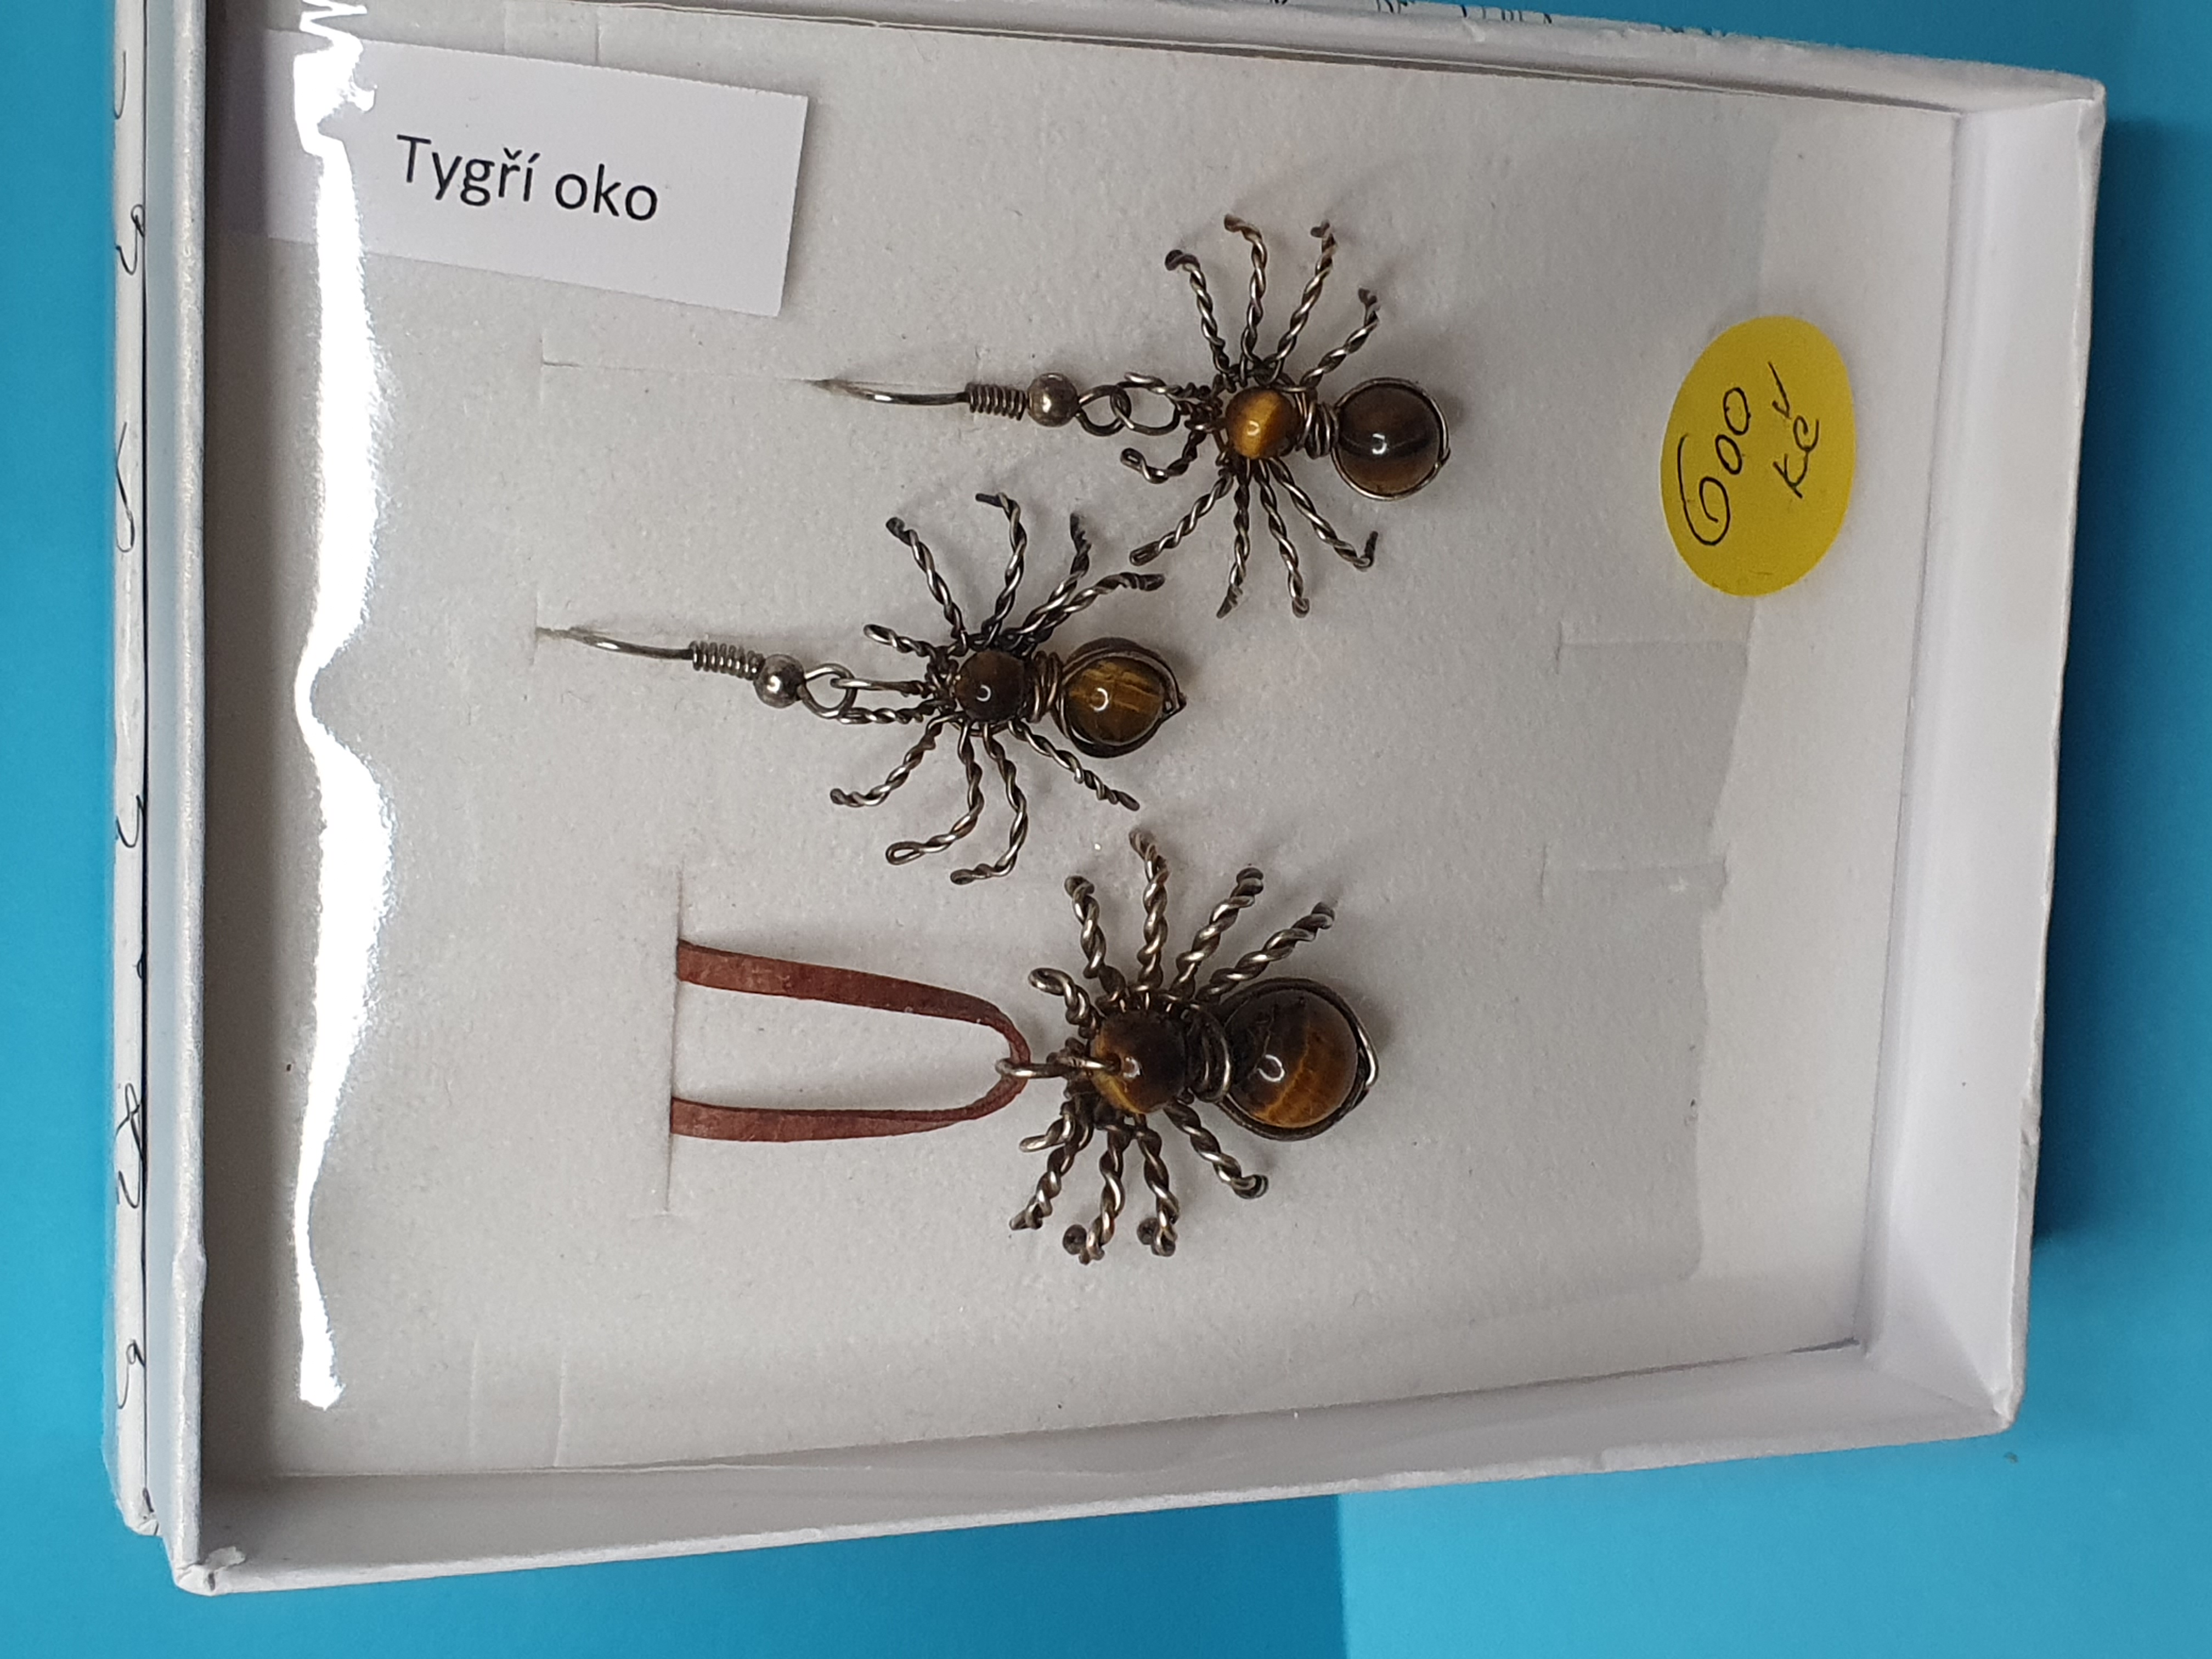 Drátkovný set - Pavoučci - Tygří oko. Velikost2,5 x 2,5 cm. Cena 600 Kč